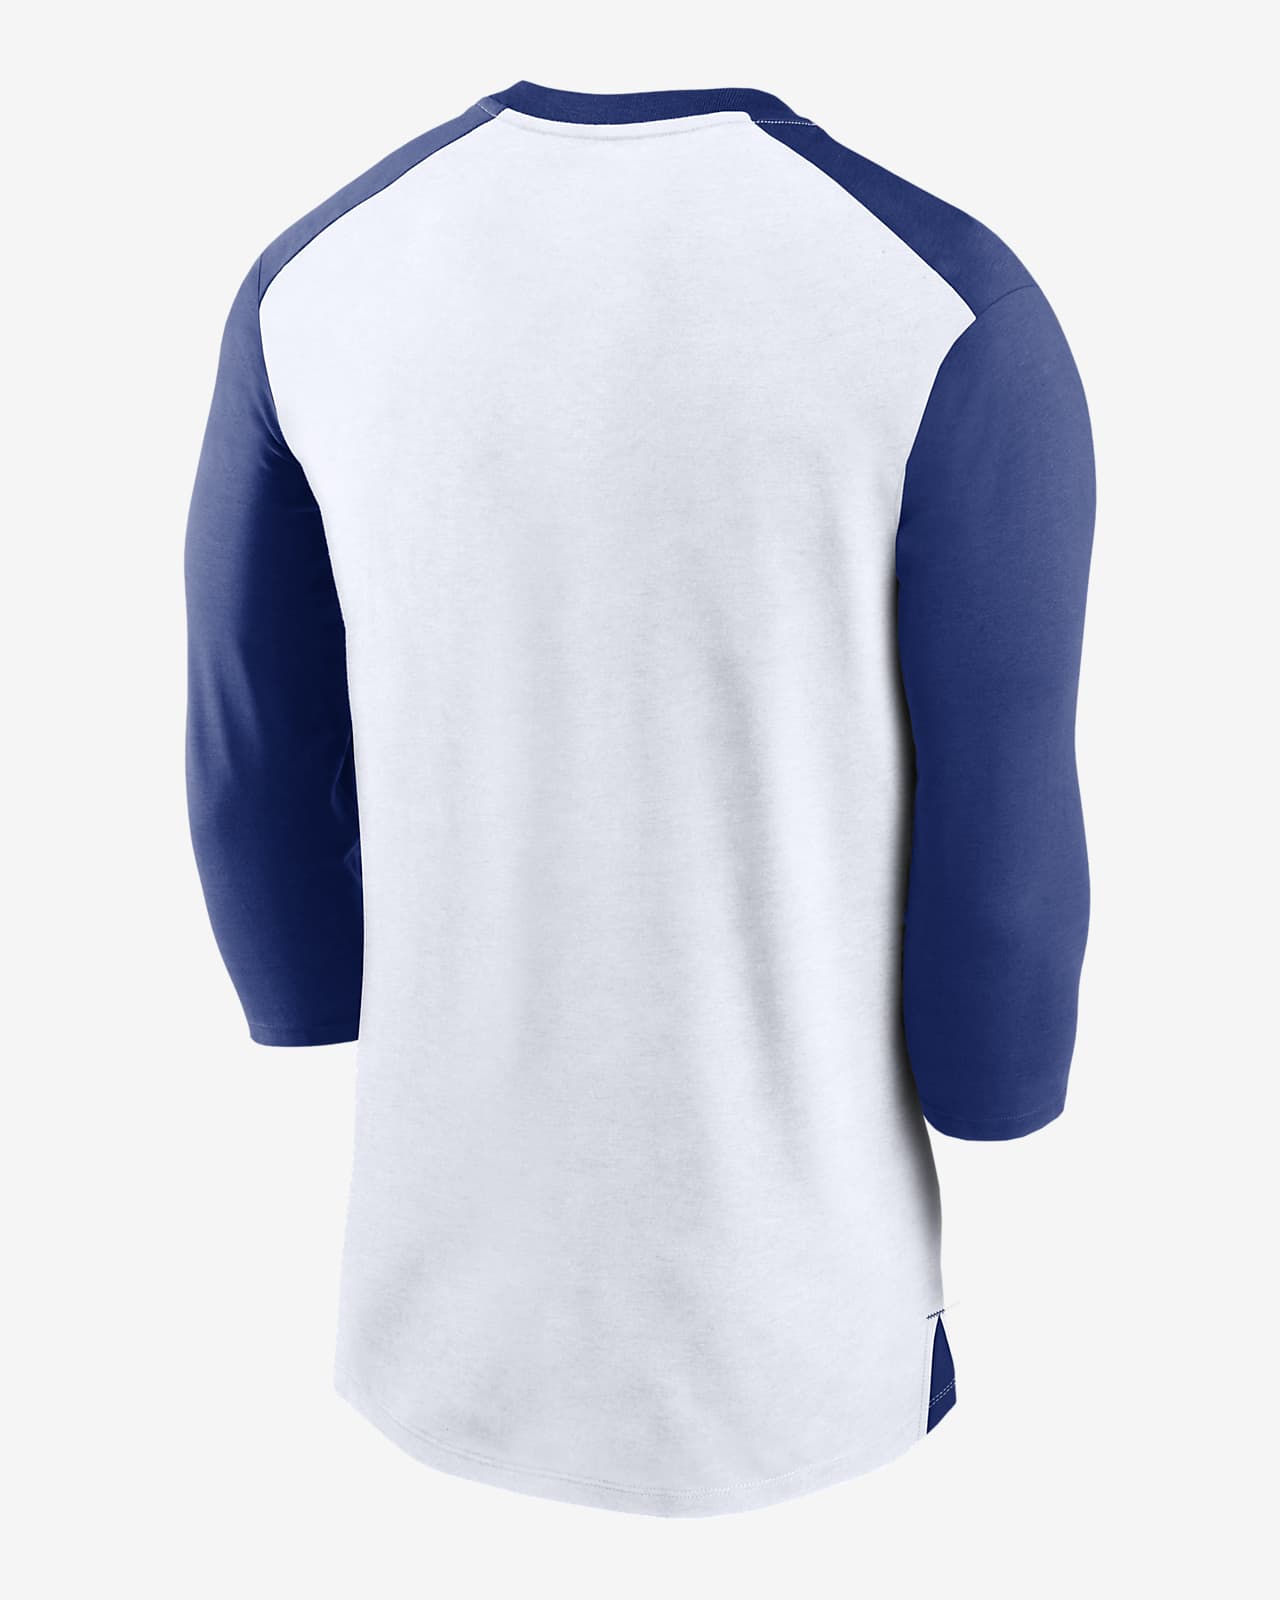 Men's New York Mets Pro Standard White Team Logo T-Shirt